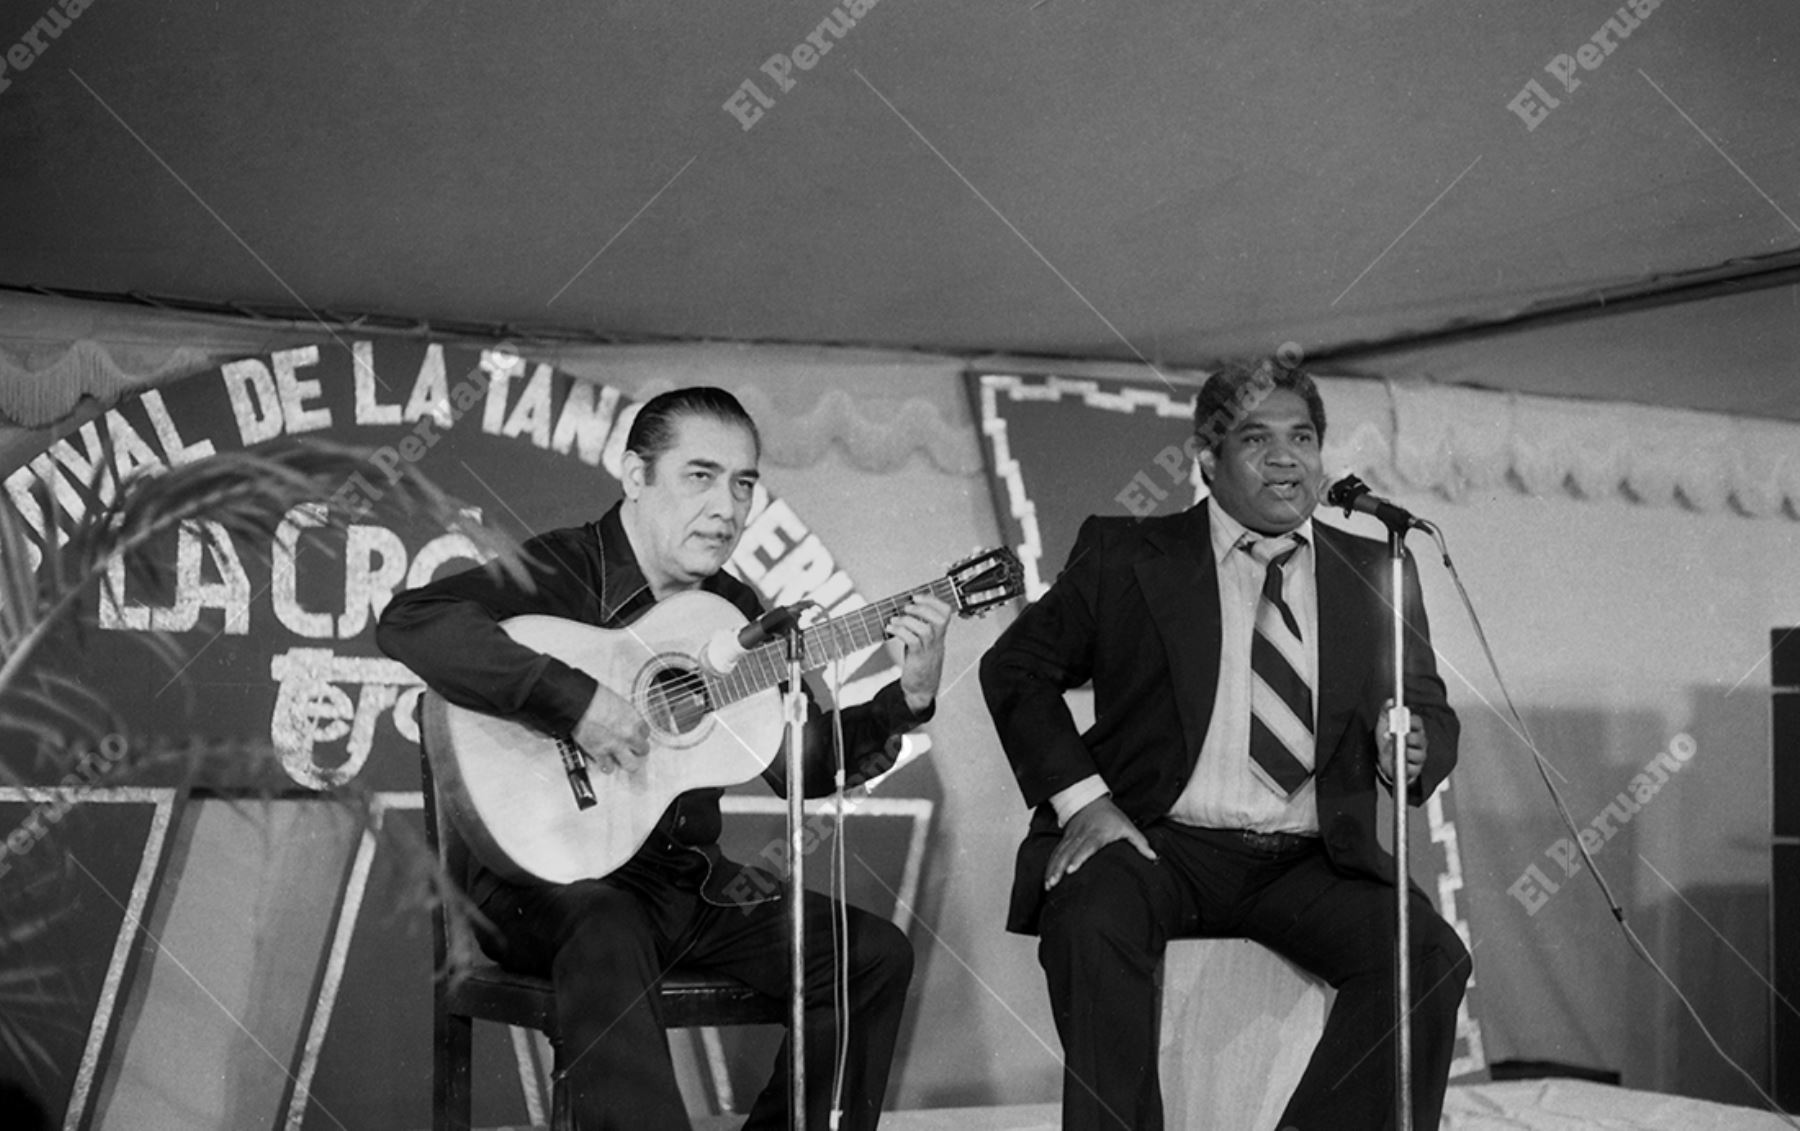 Lima - 27 abril 1979 / Presentación de Oscar Avilés y Arturo "Zambo" Cavero en el Festival de la Tanga auspiciado por La Crónica. Foto: Archivo Histórico de El Peruano